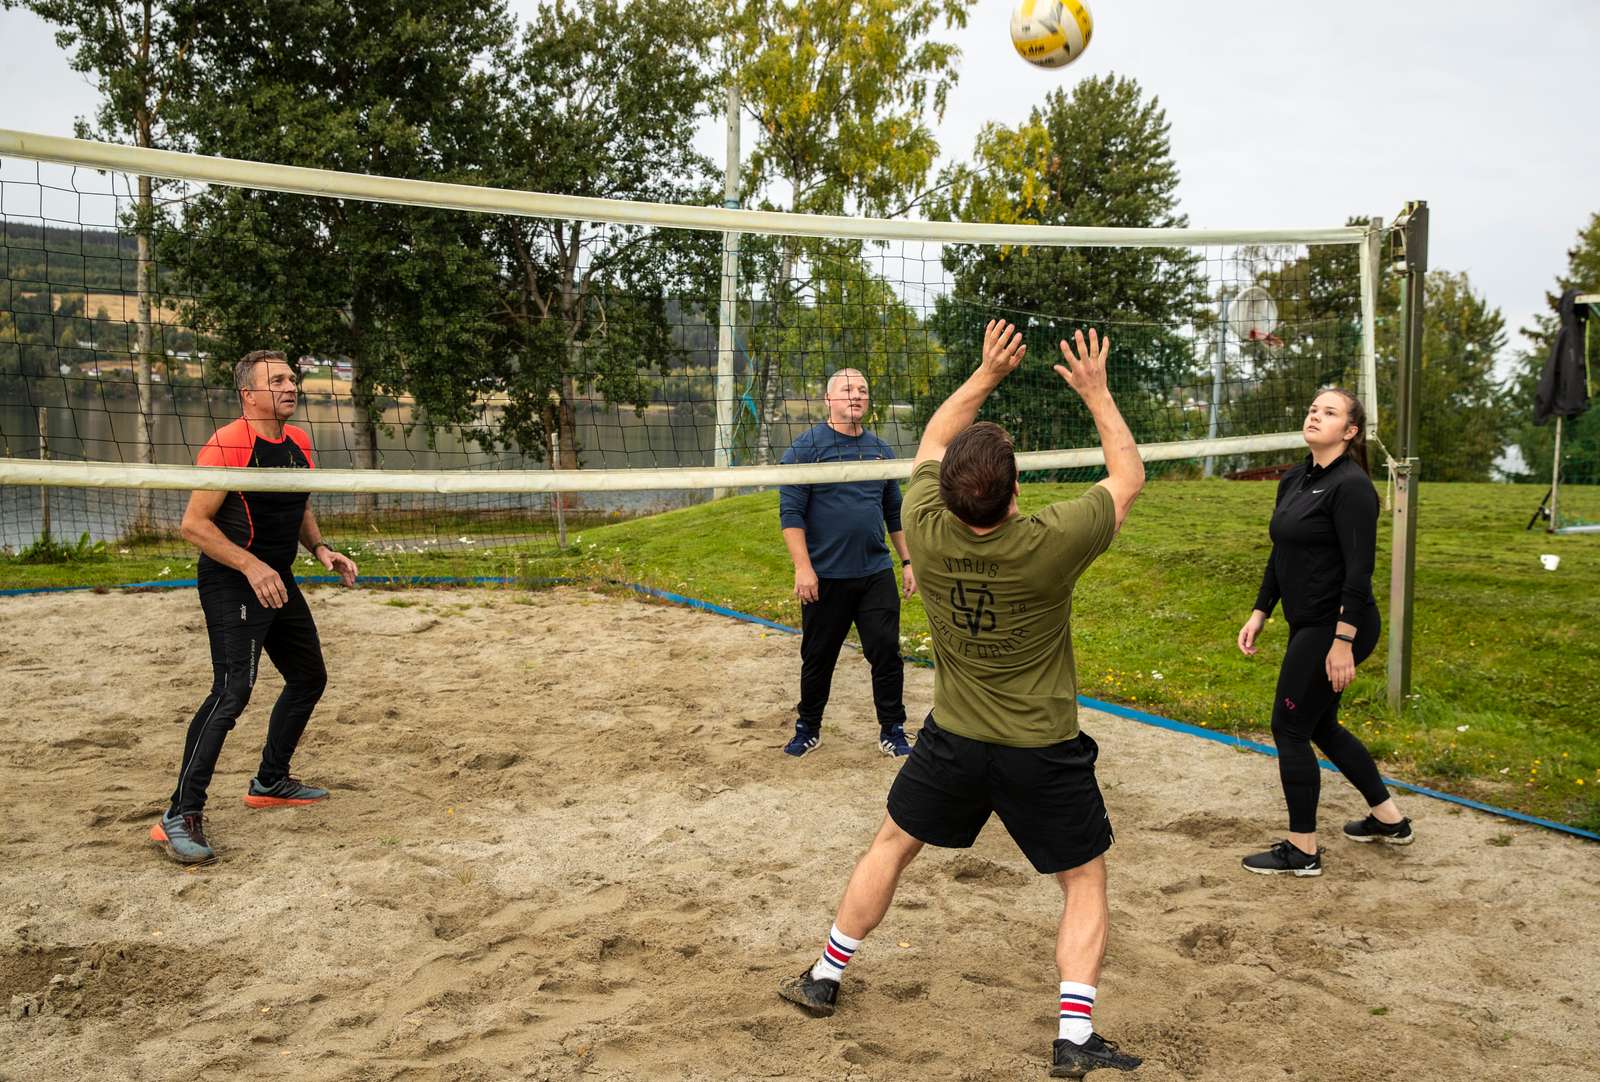 Fire pasienter spiller volleyball. Dette er en treningsform som kan bidra til å motvirke depressive symptomer i pasienter under rusbehandling.